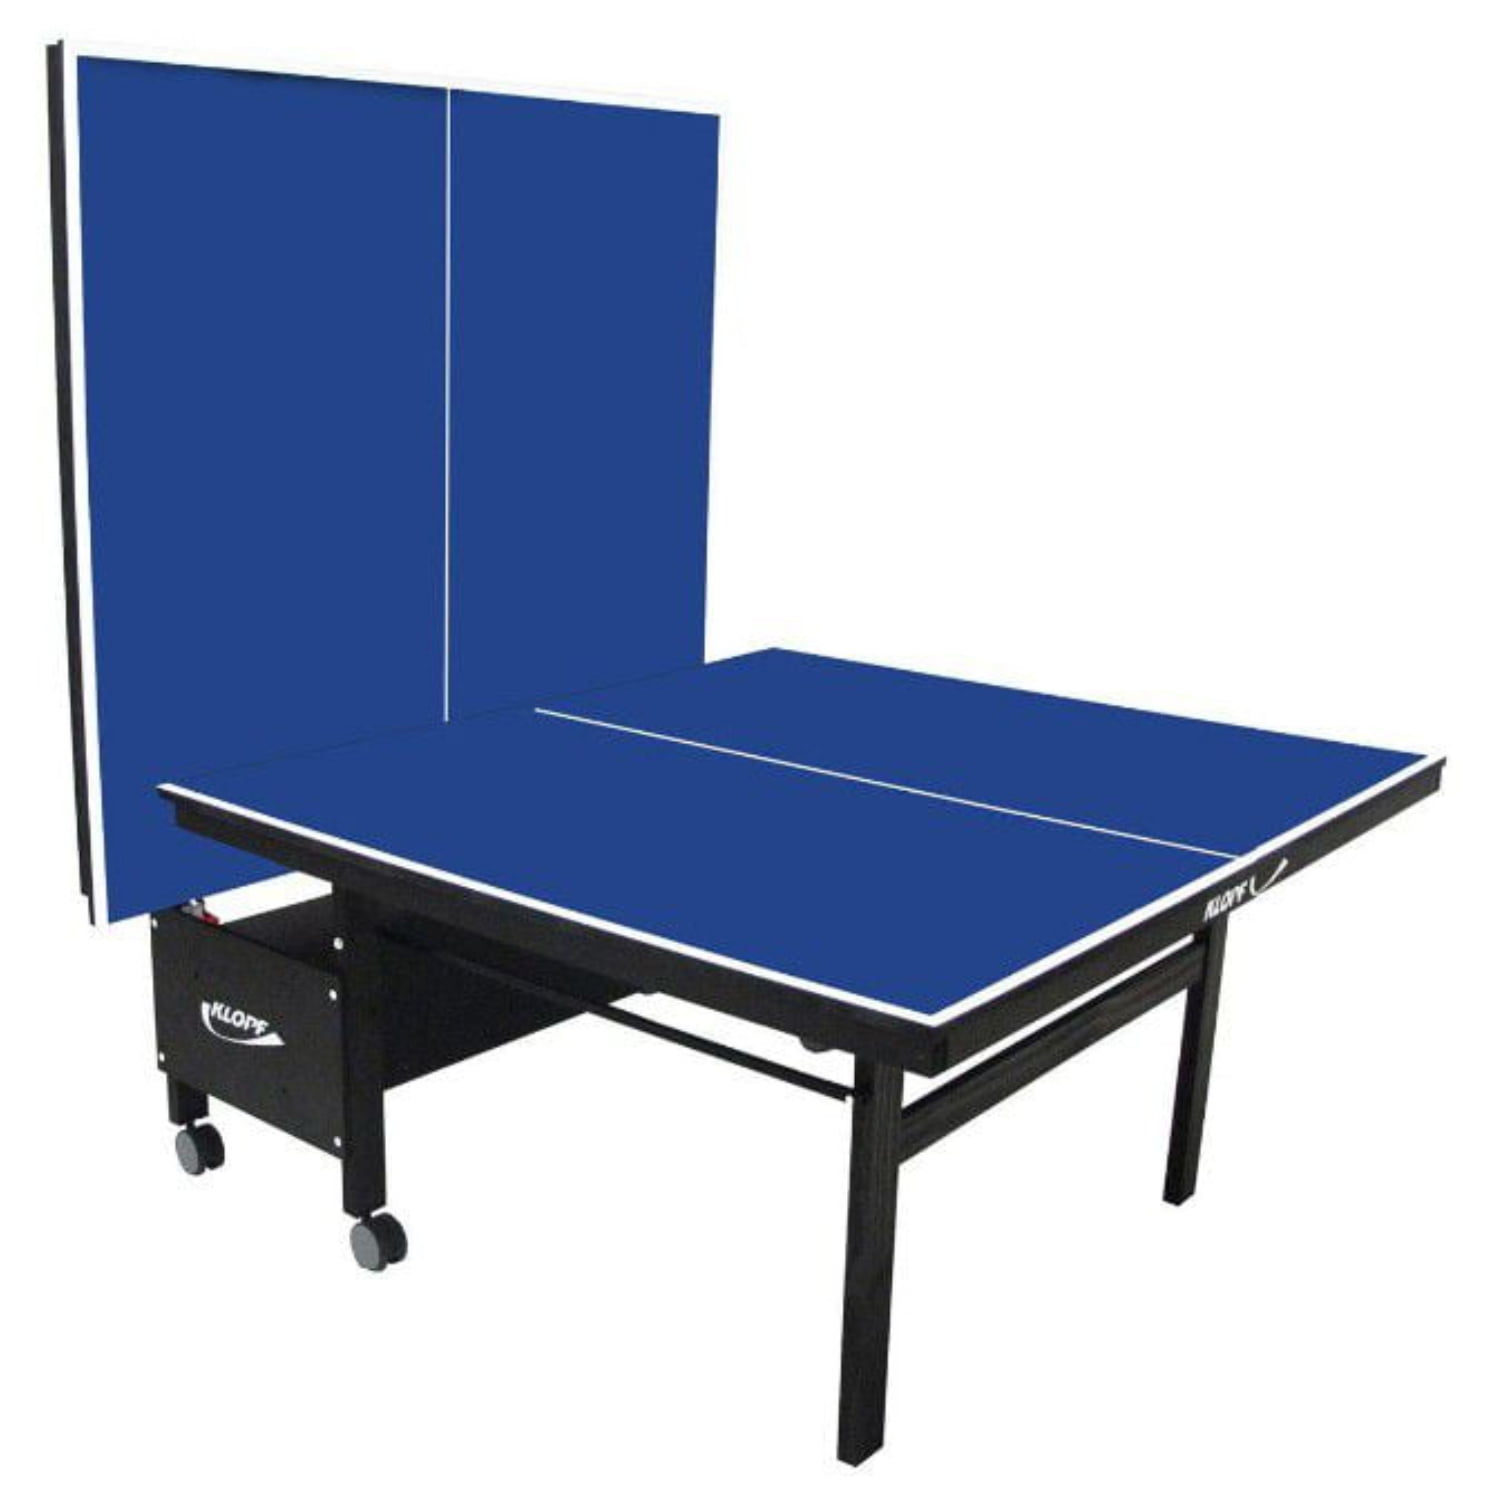 Mesa de Ping Pong Dobrável MDF 18mm (Paredão) - Cama Elástica RS